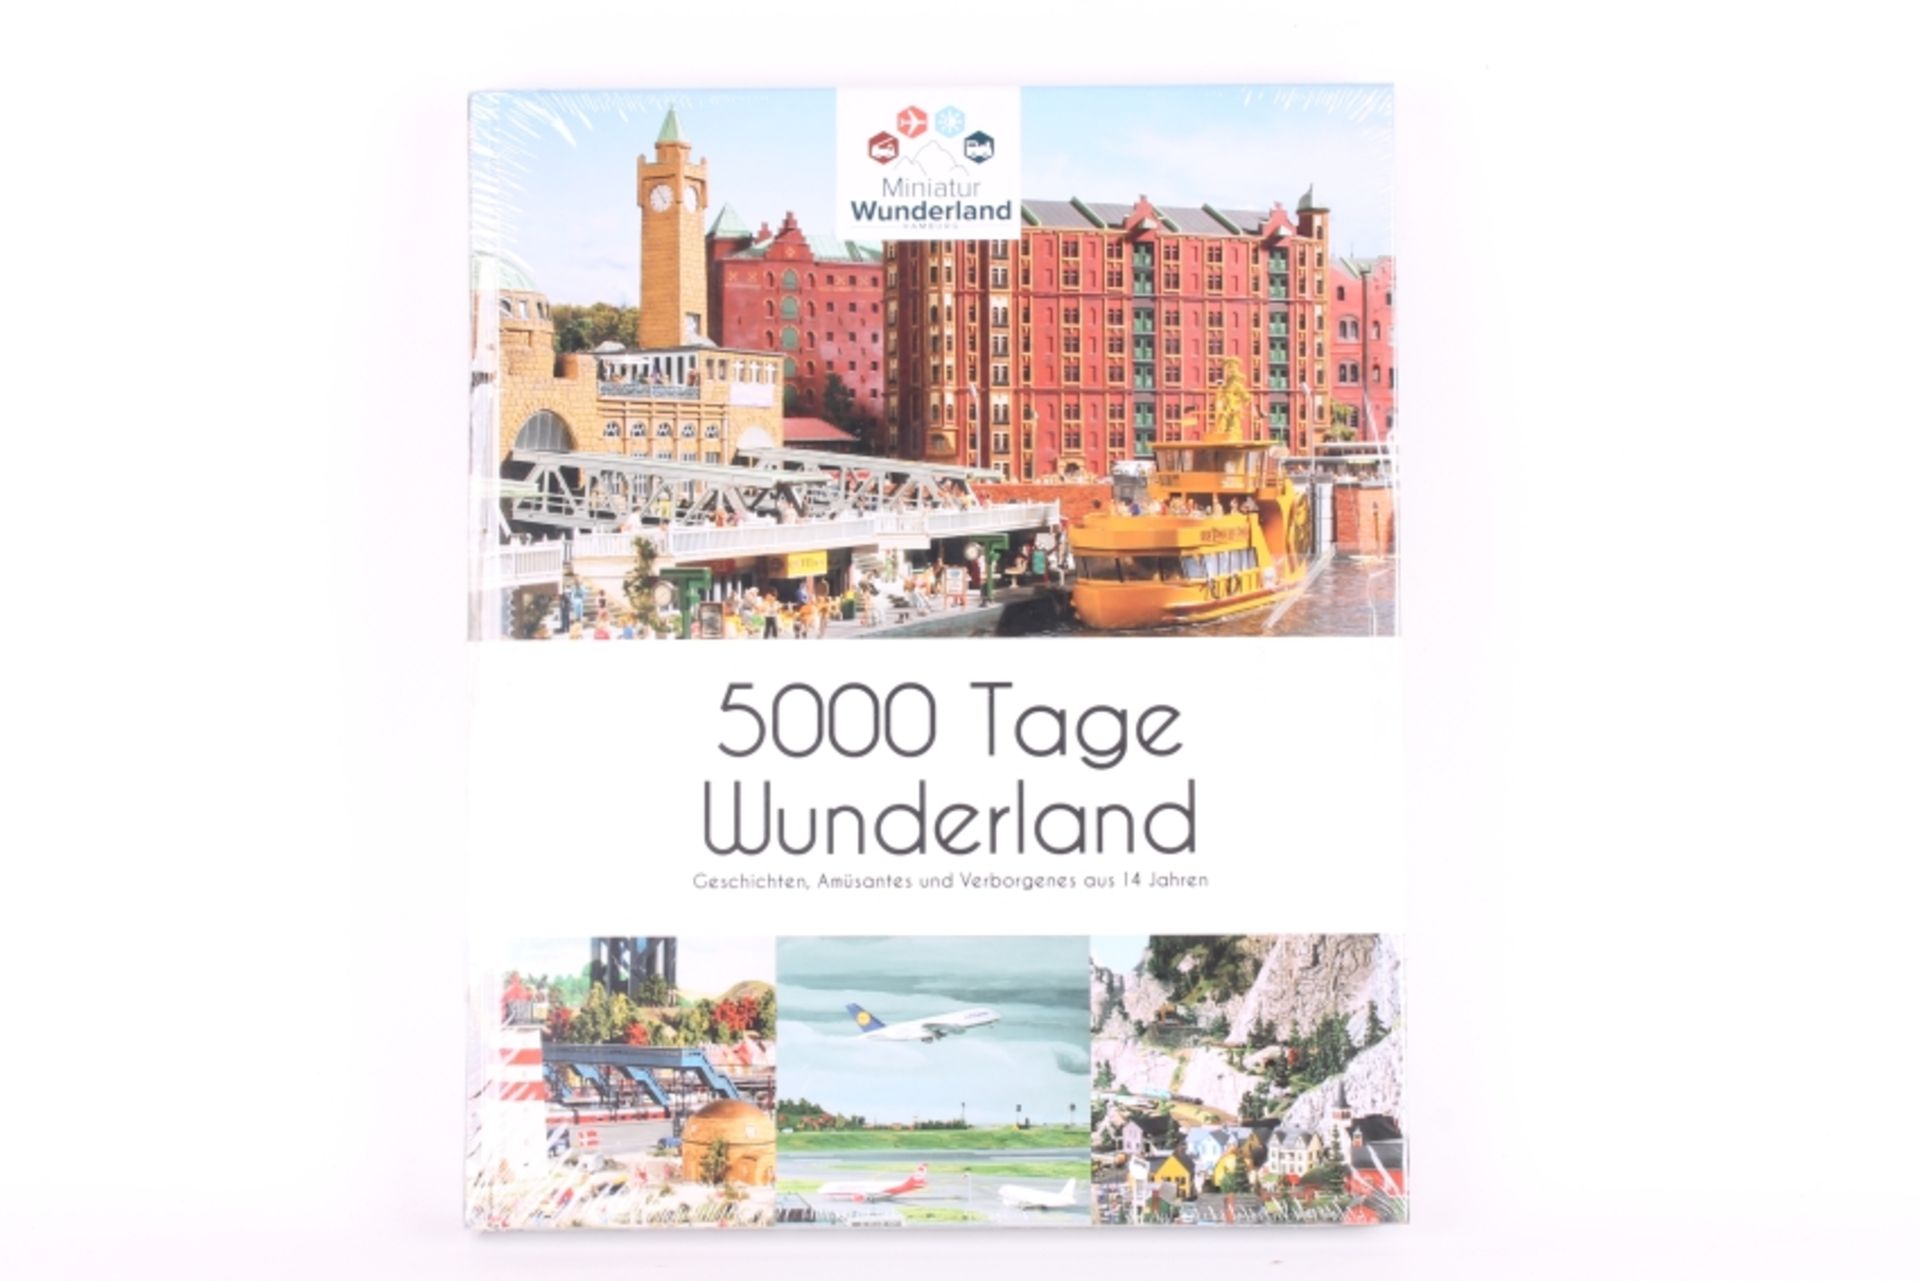 "5000 Tage Miniatur Wunderland" "5000 Tage Miniatur Wunderland", Hamburg, 2015, Buch und DVD, noch